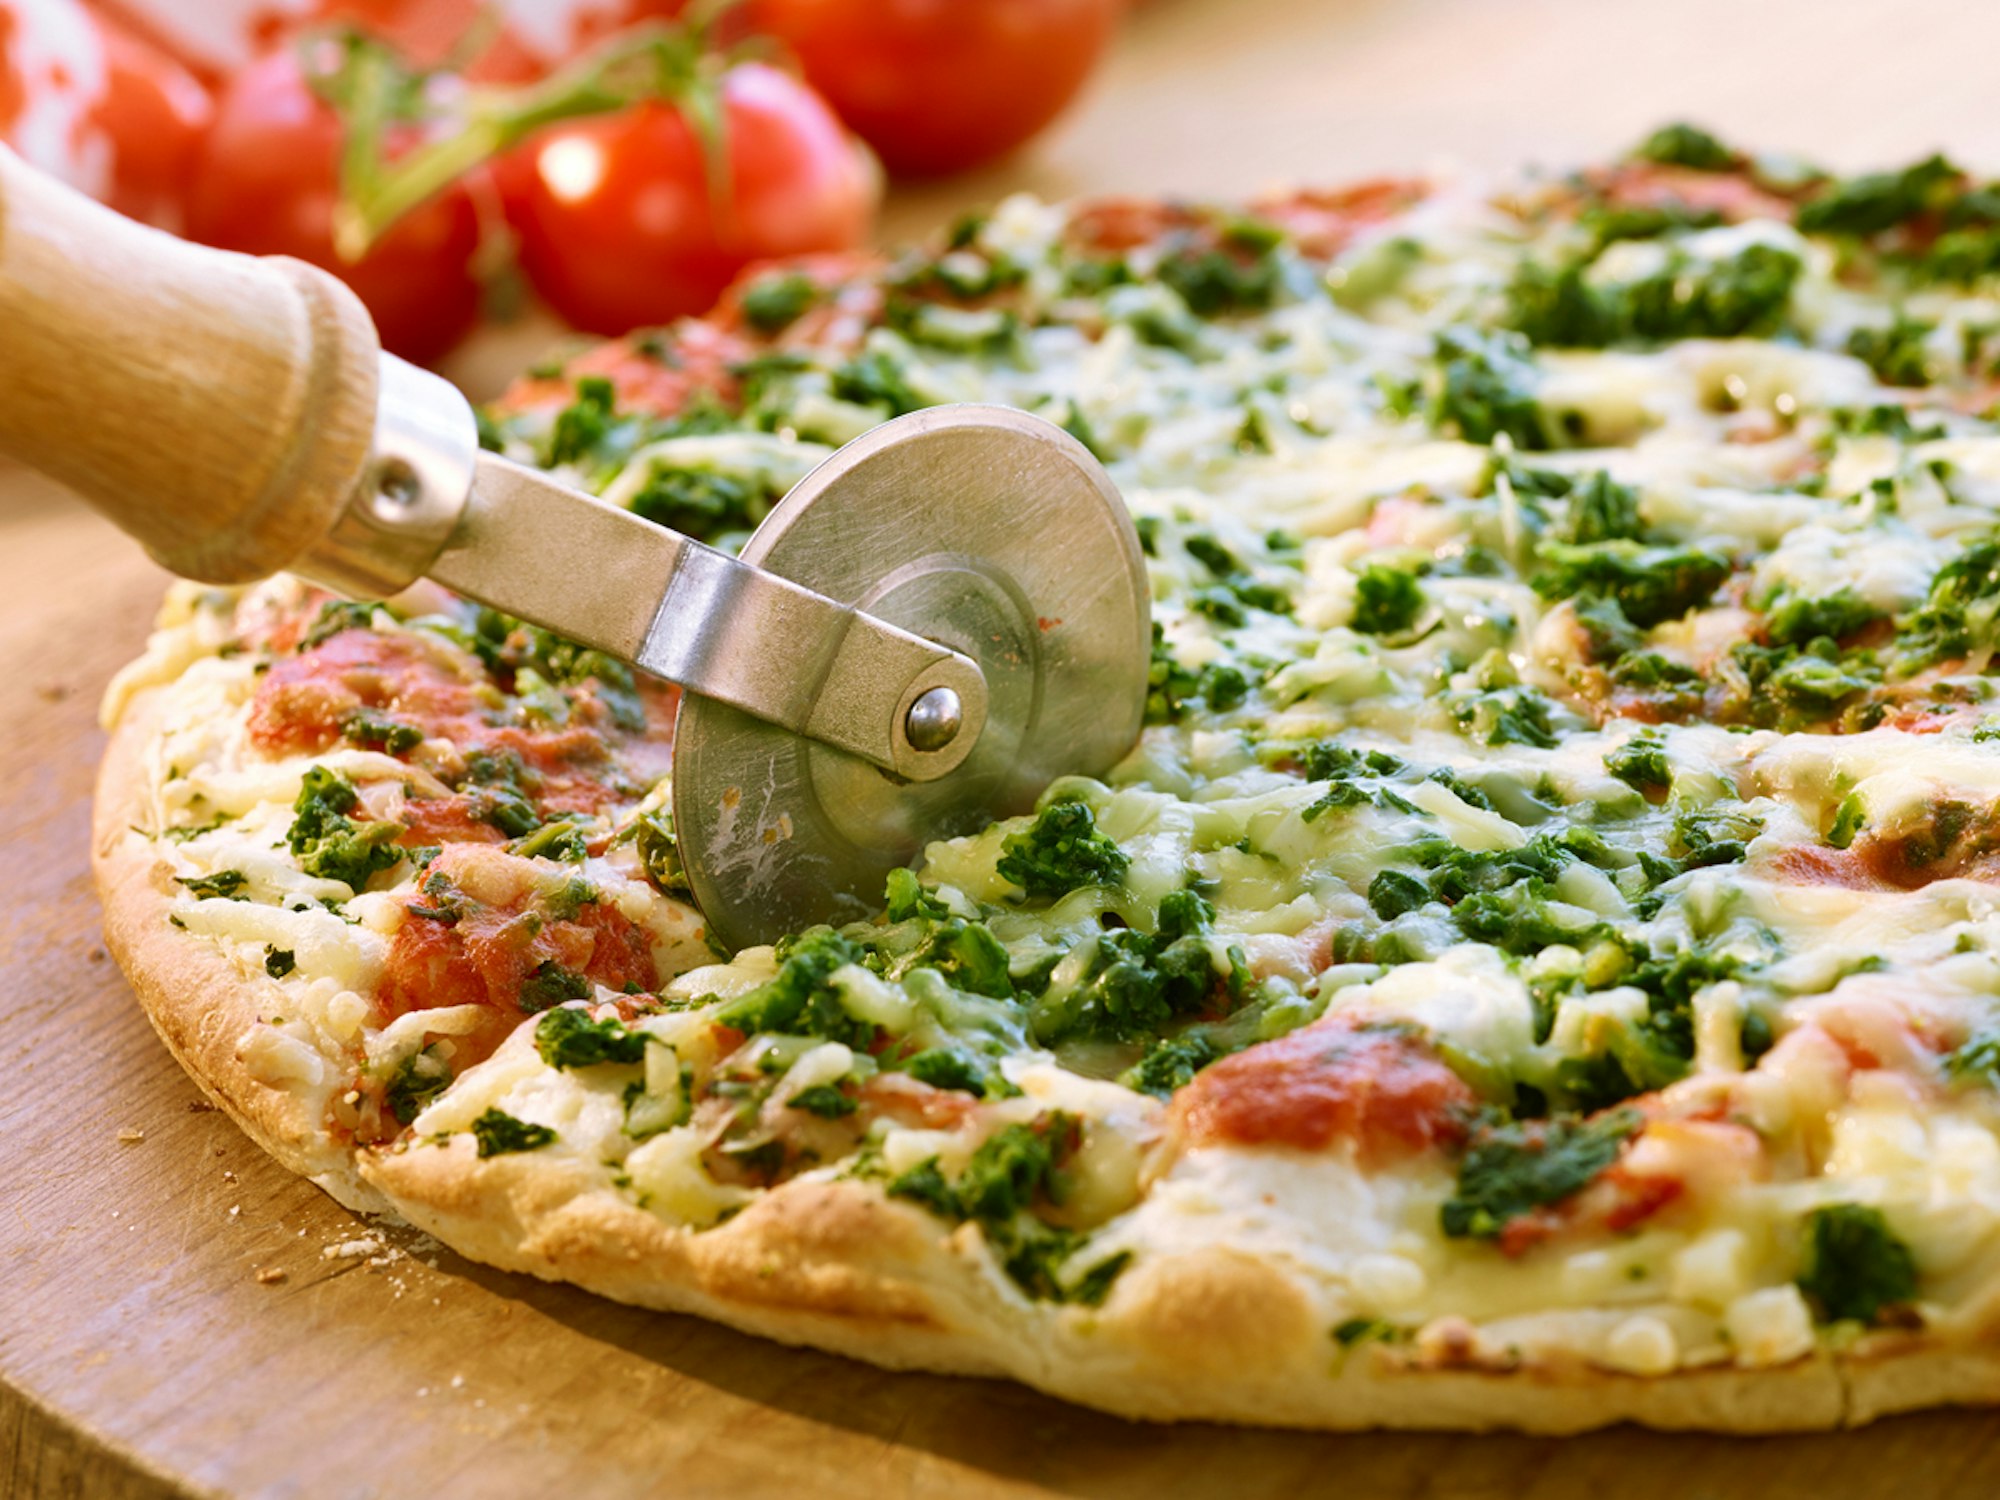 Wegen zwei Knoblauch-Pizzen eskalierte in Mönchengladbach ein Streit mit einem Taxi-Fahrer. Zu sehen ist eine Pizza.